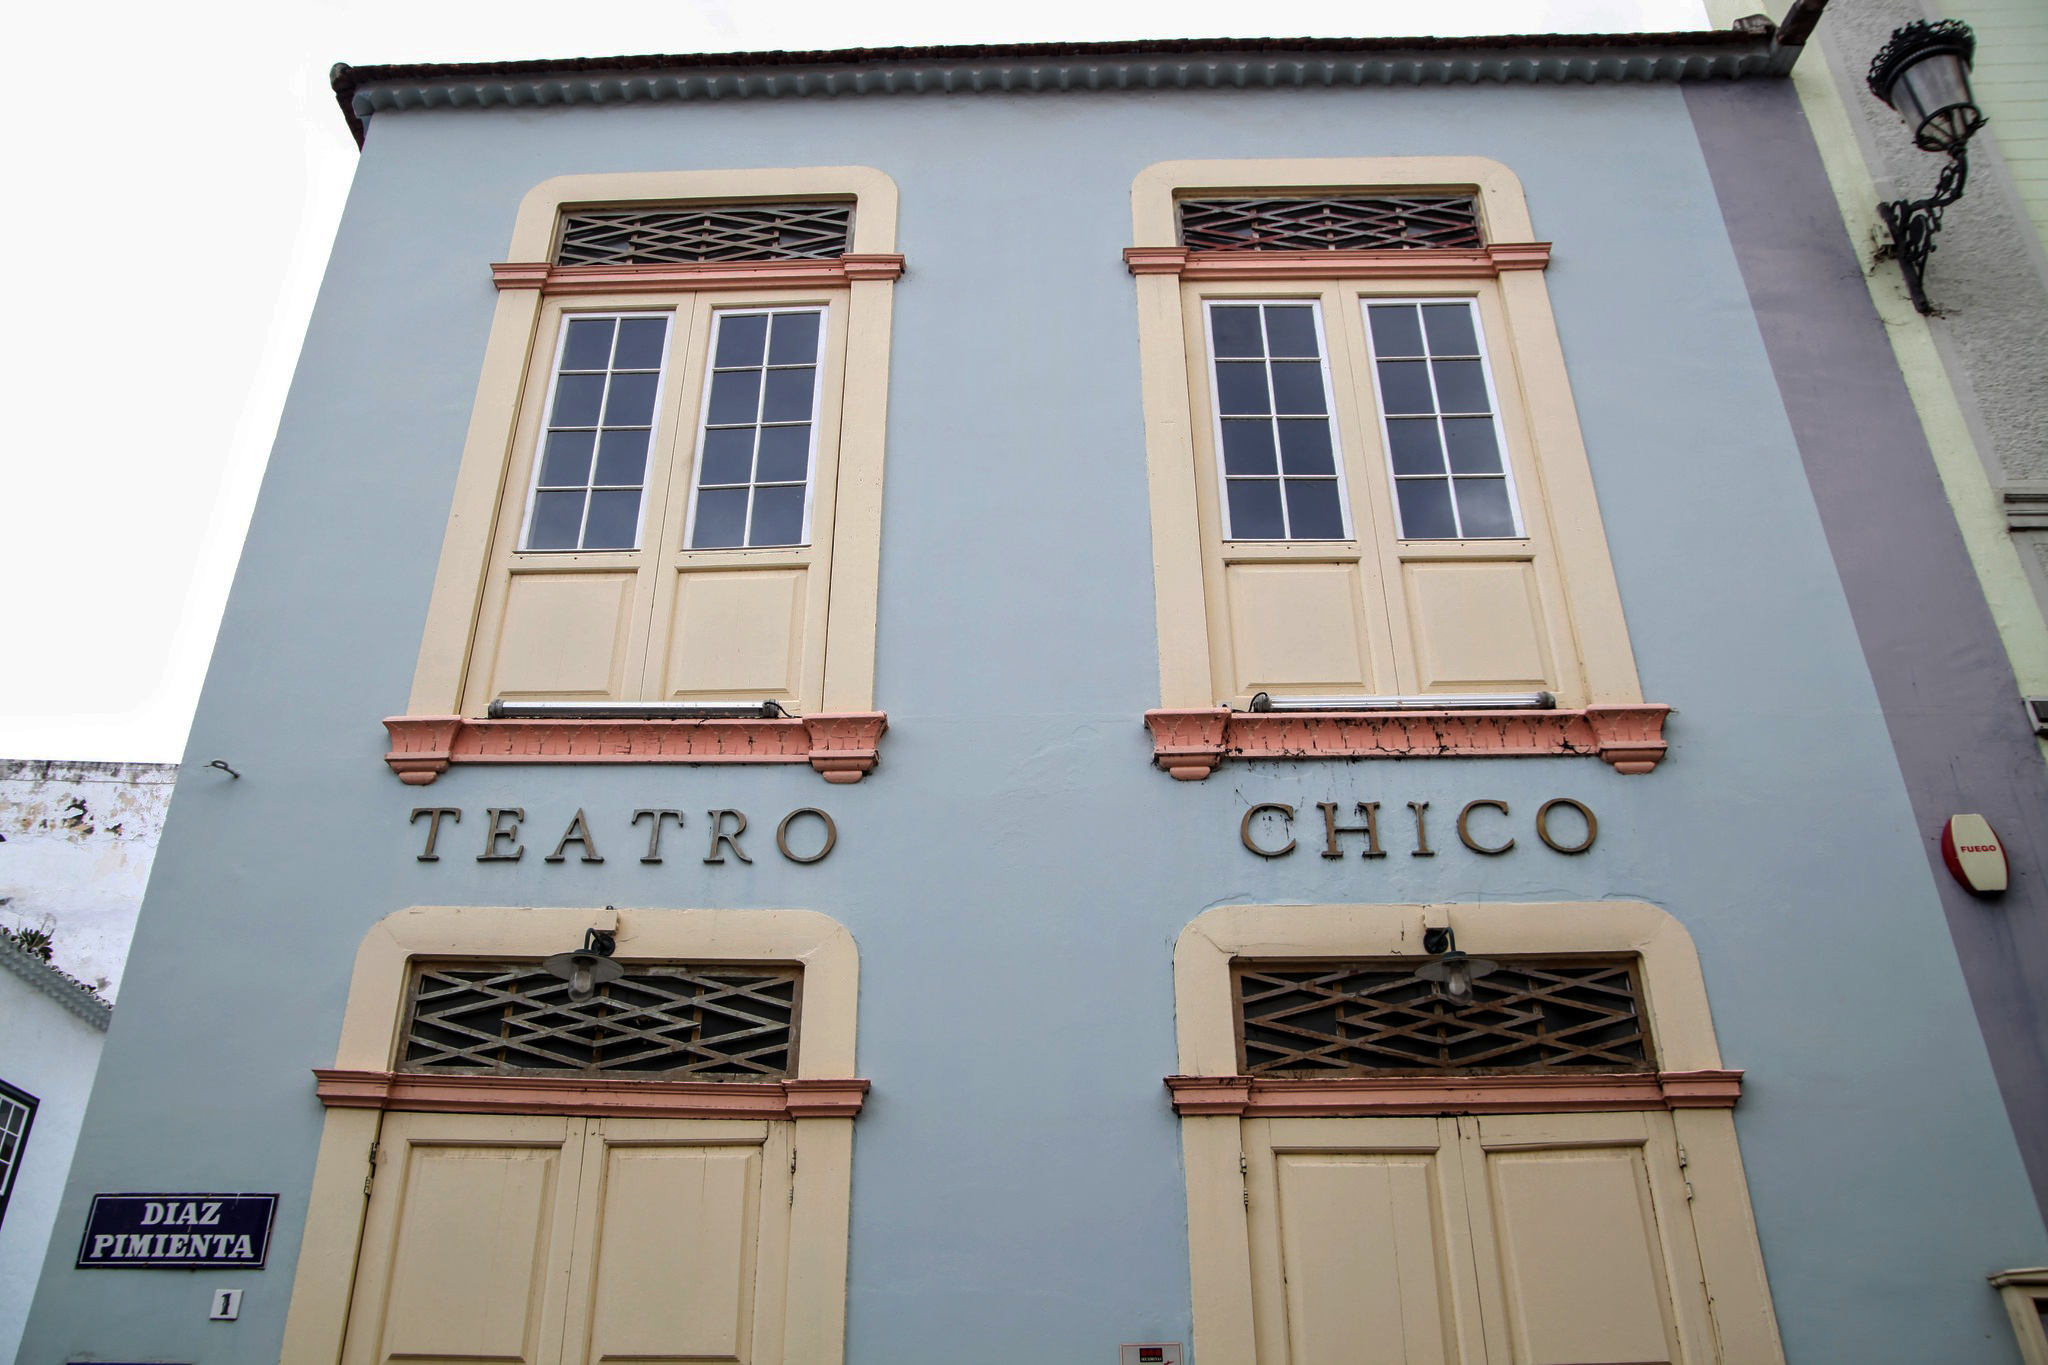 Teatro Chico